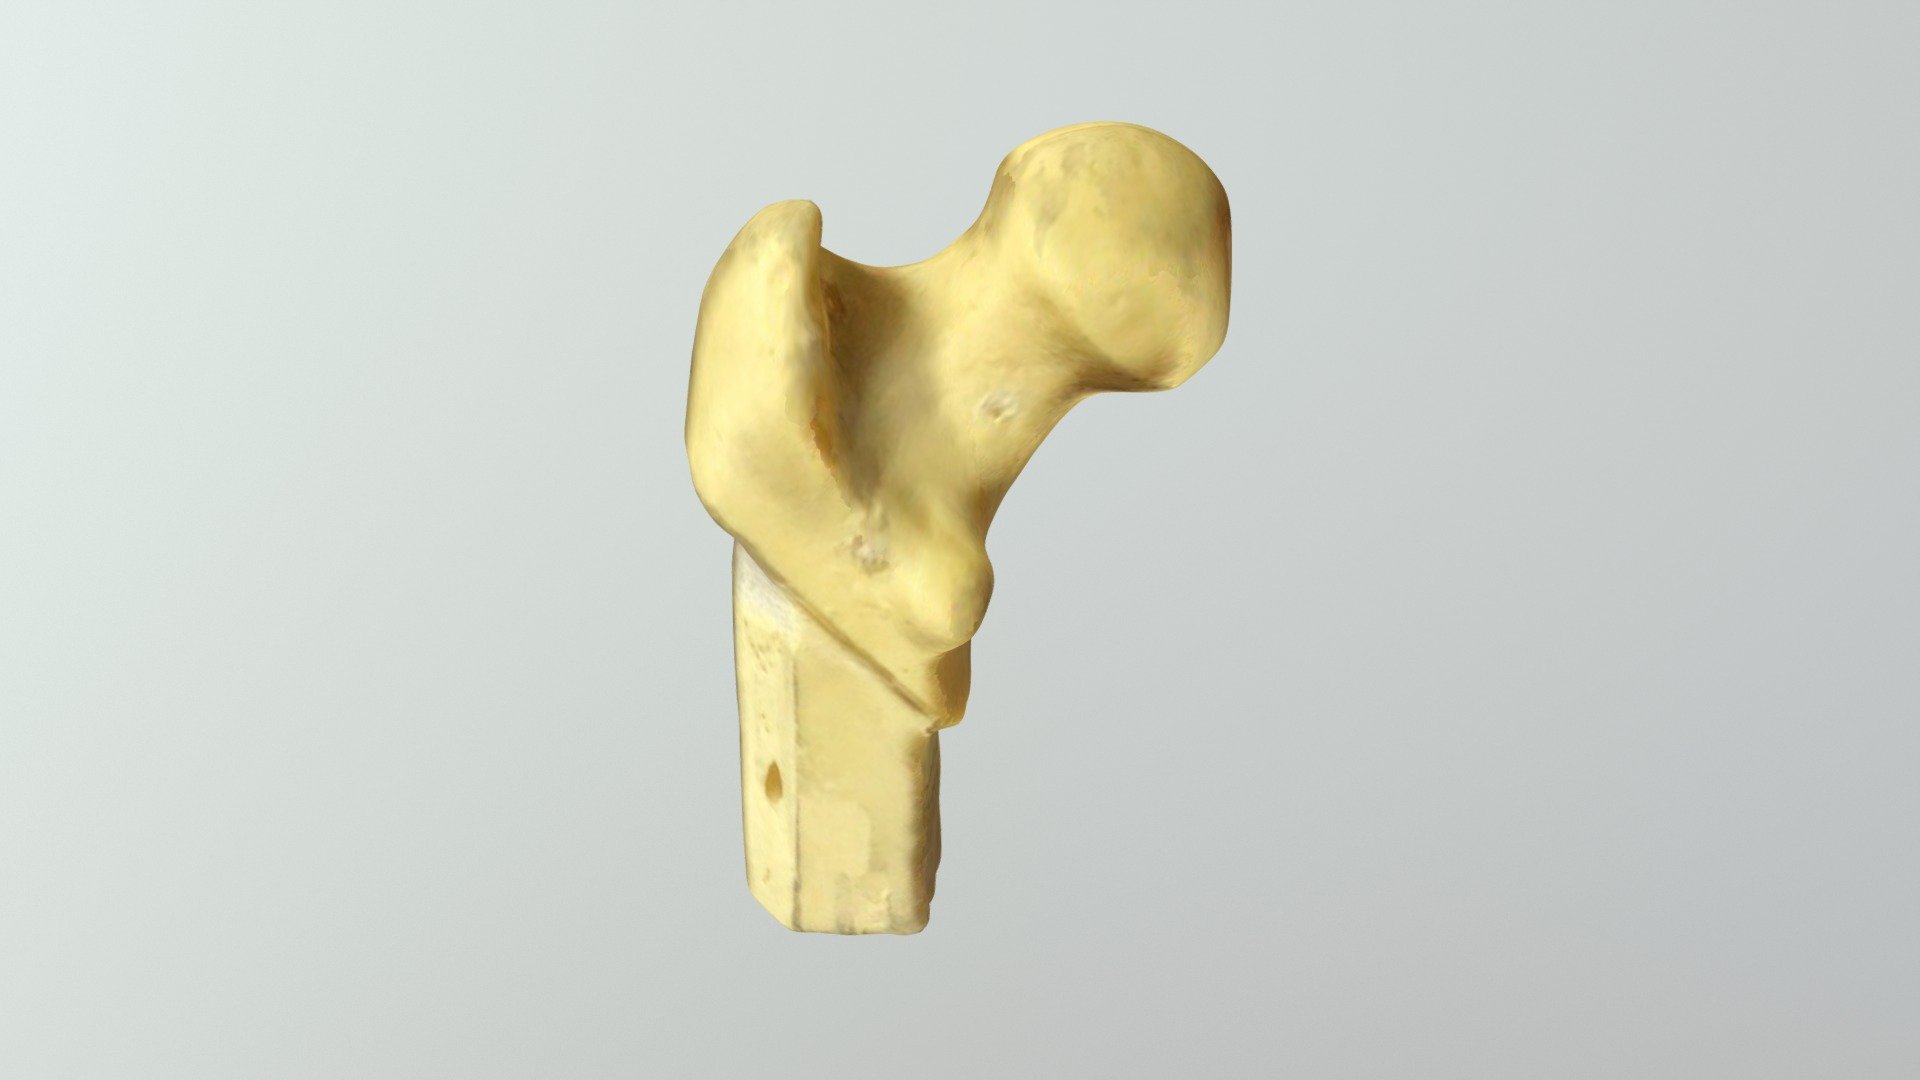 Hip Bone